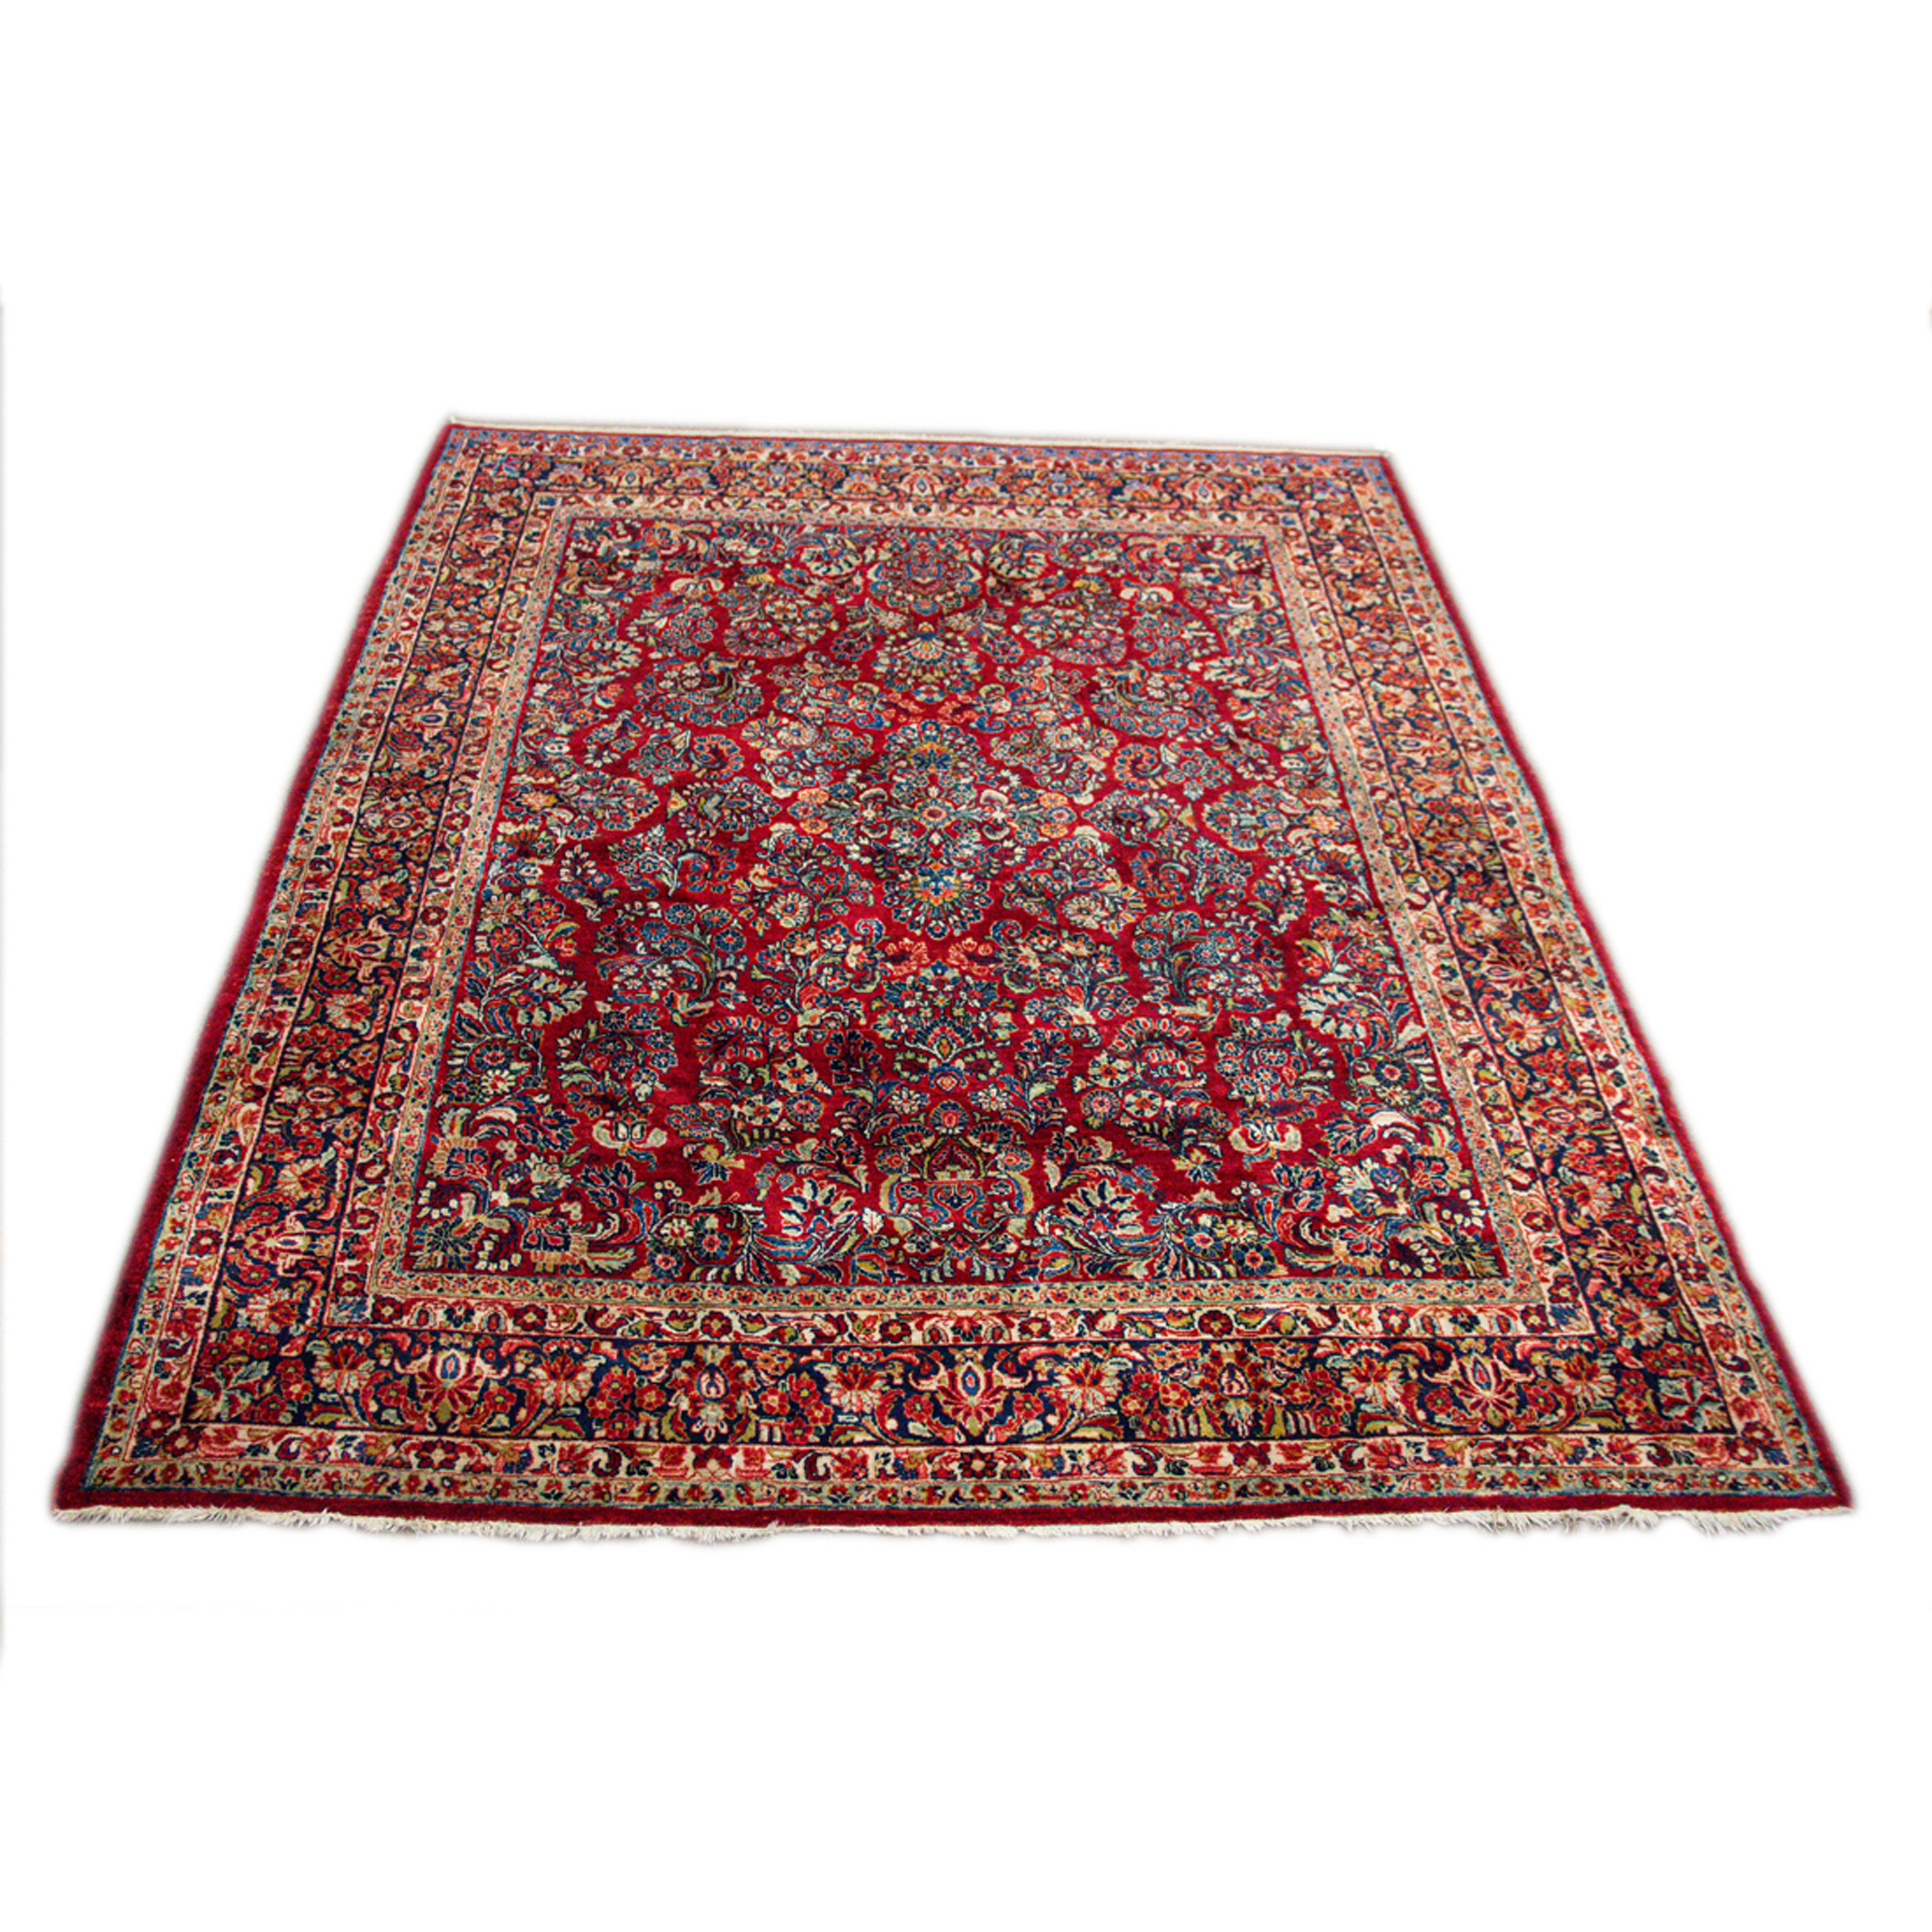 A SAROUK CARPET A Sarouk carpet  3a3e69